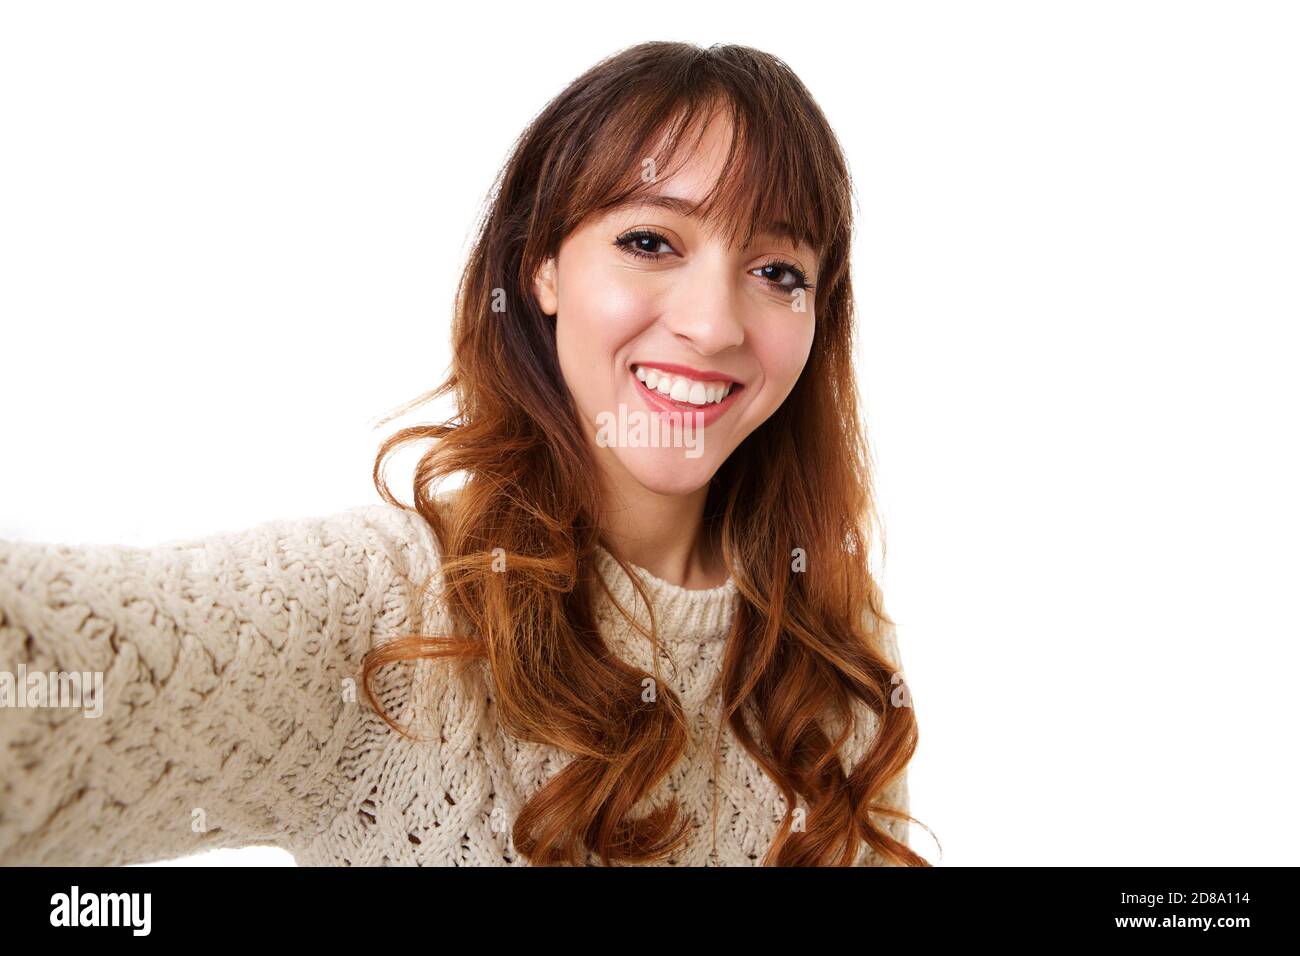 Porträt einer jungen Frau lächelt und nimmt ein Selfie gegen Isolierter weißer Hintergrund Stockfoto